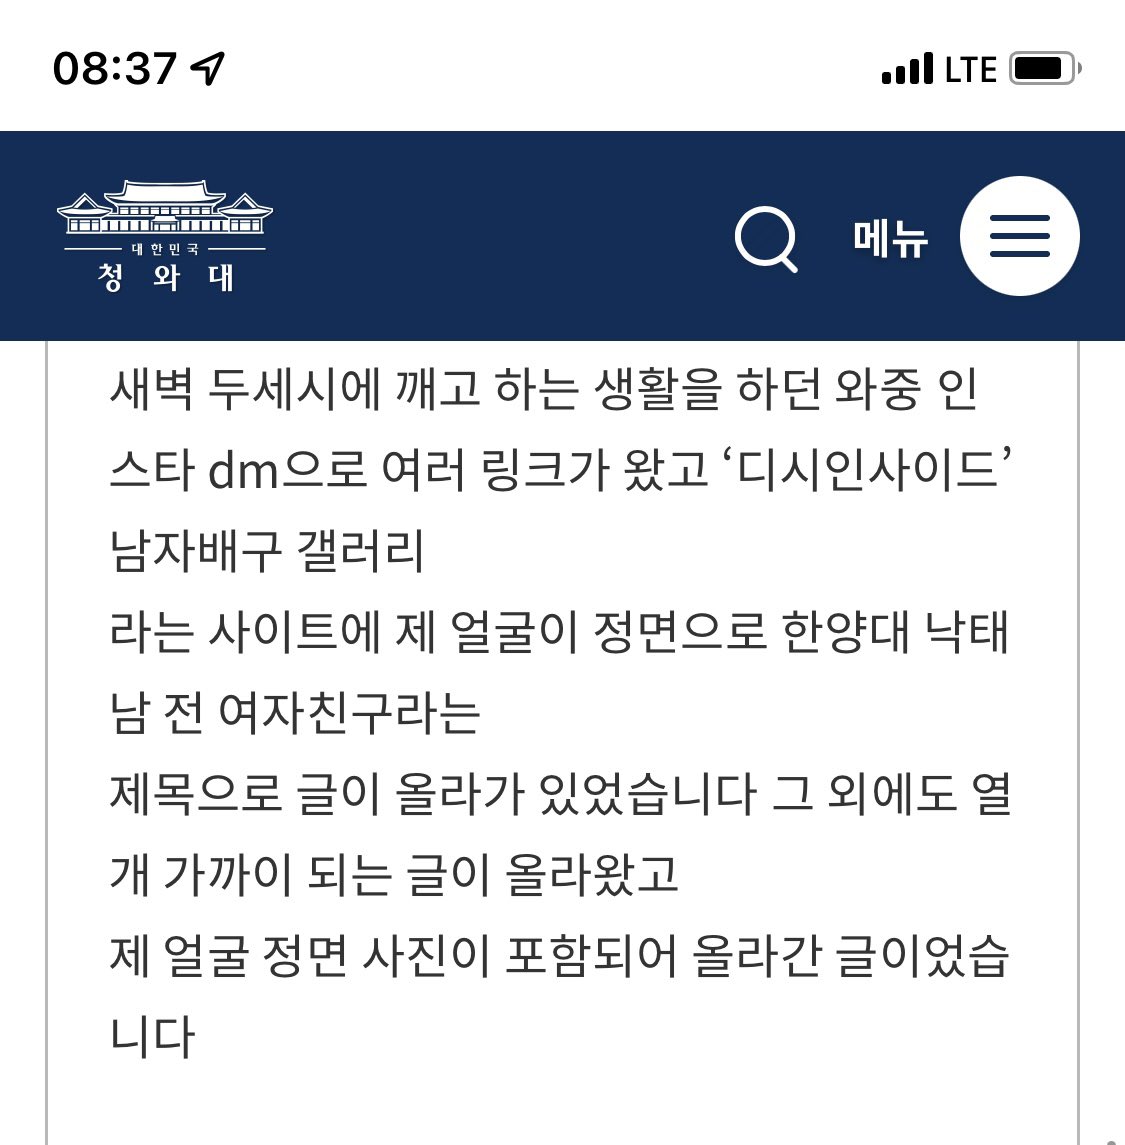 링크 야갤 방 텔레 그램 비트코인 주말장